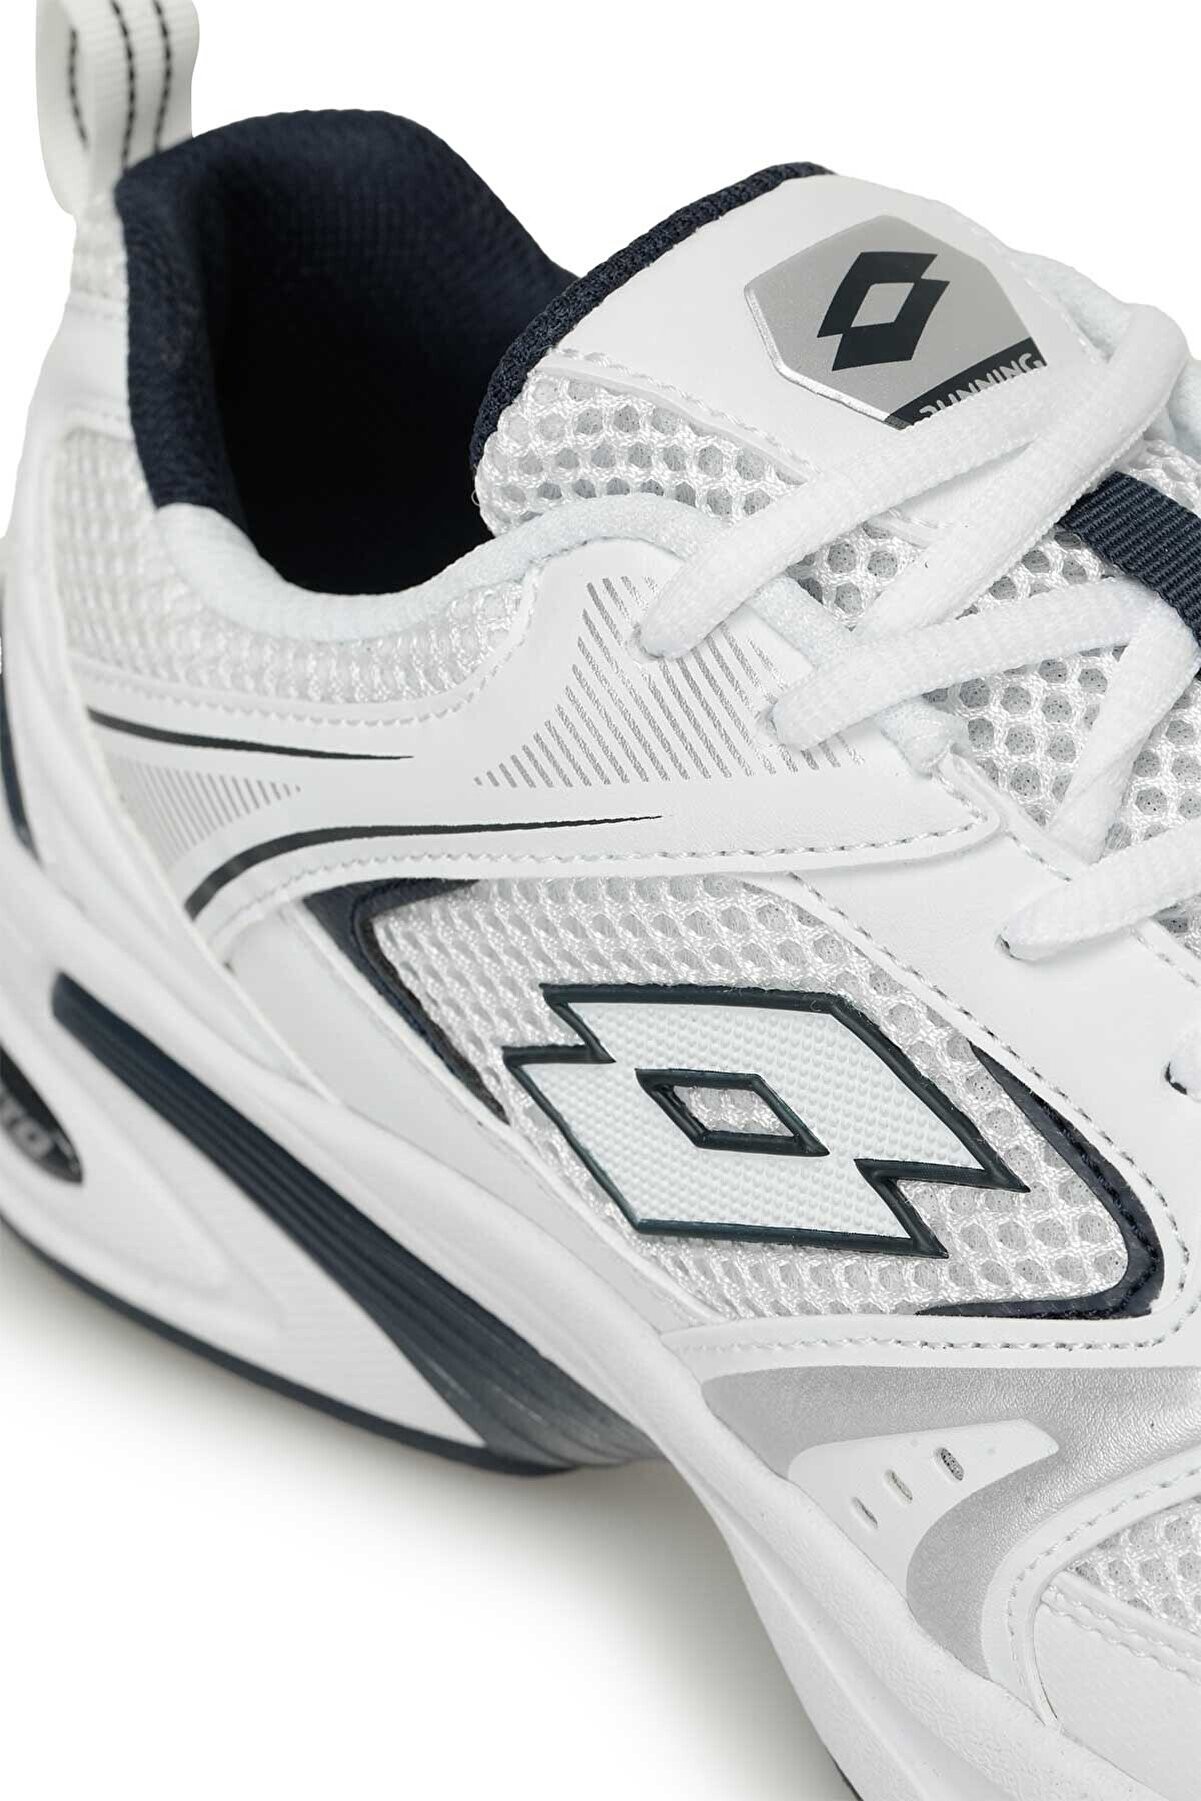 ATHENS 4FX Beyaz-Lacivert Erkek Spor Ayakkabı 